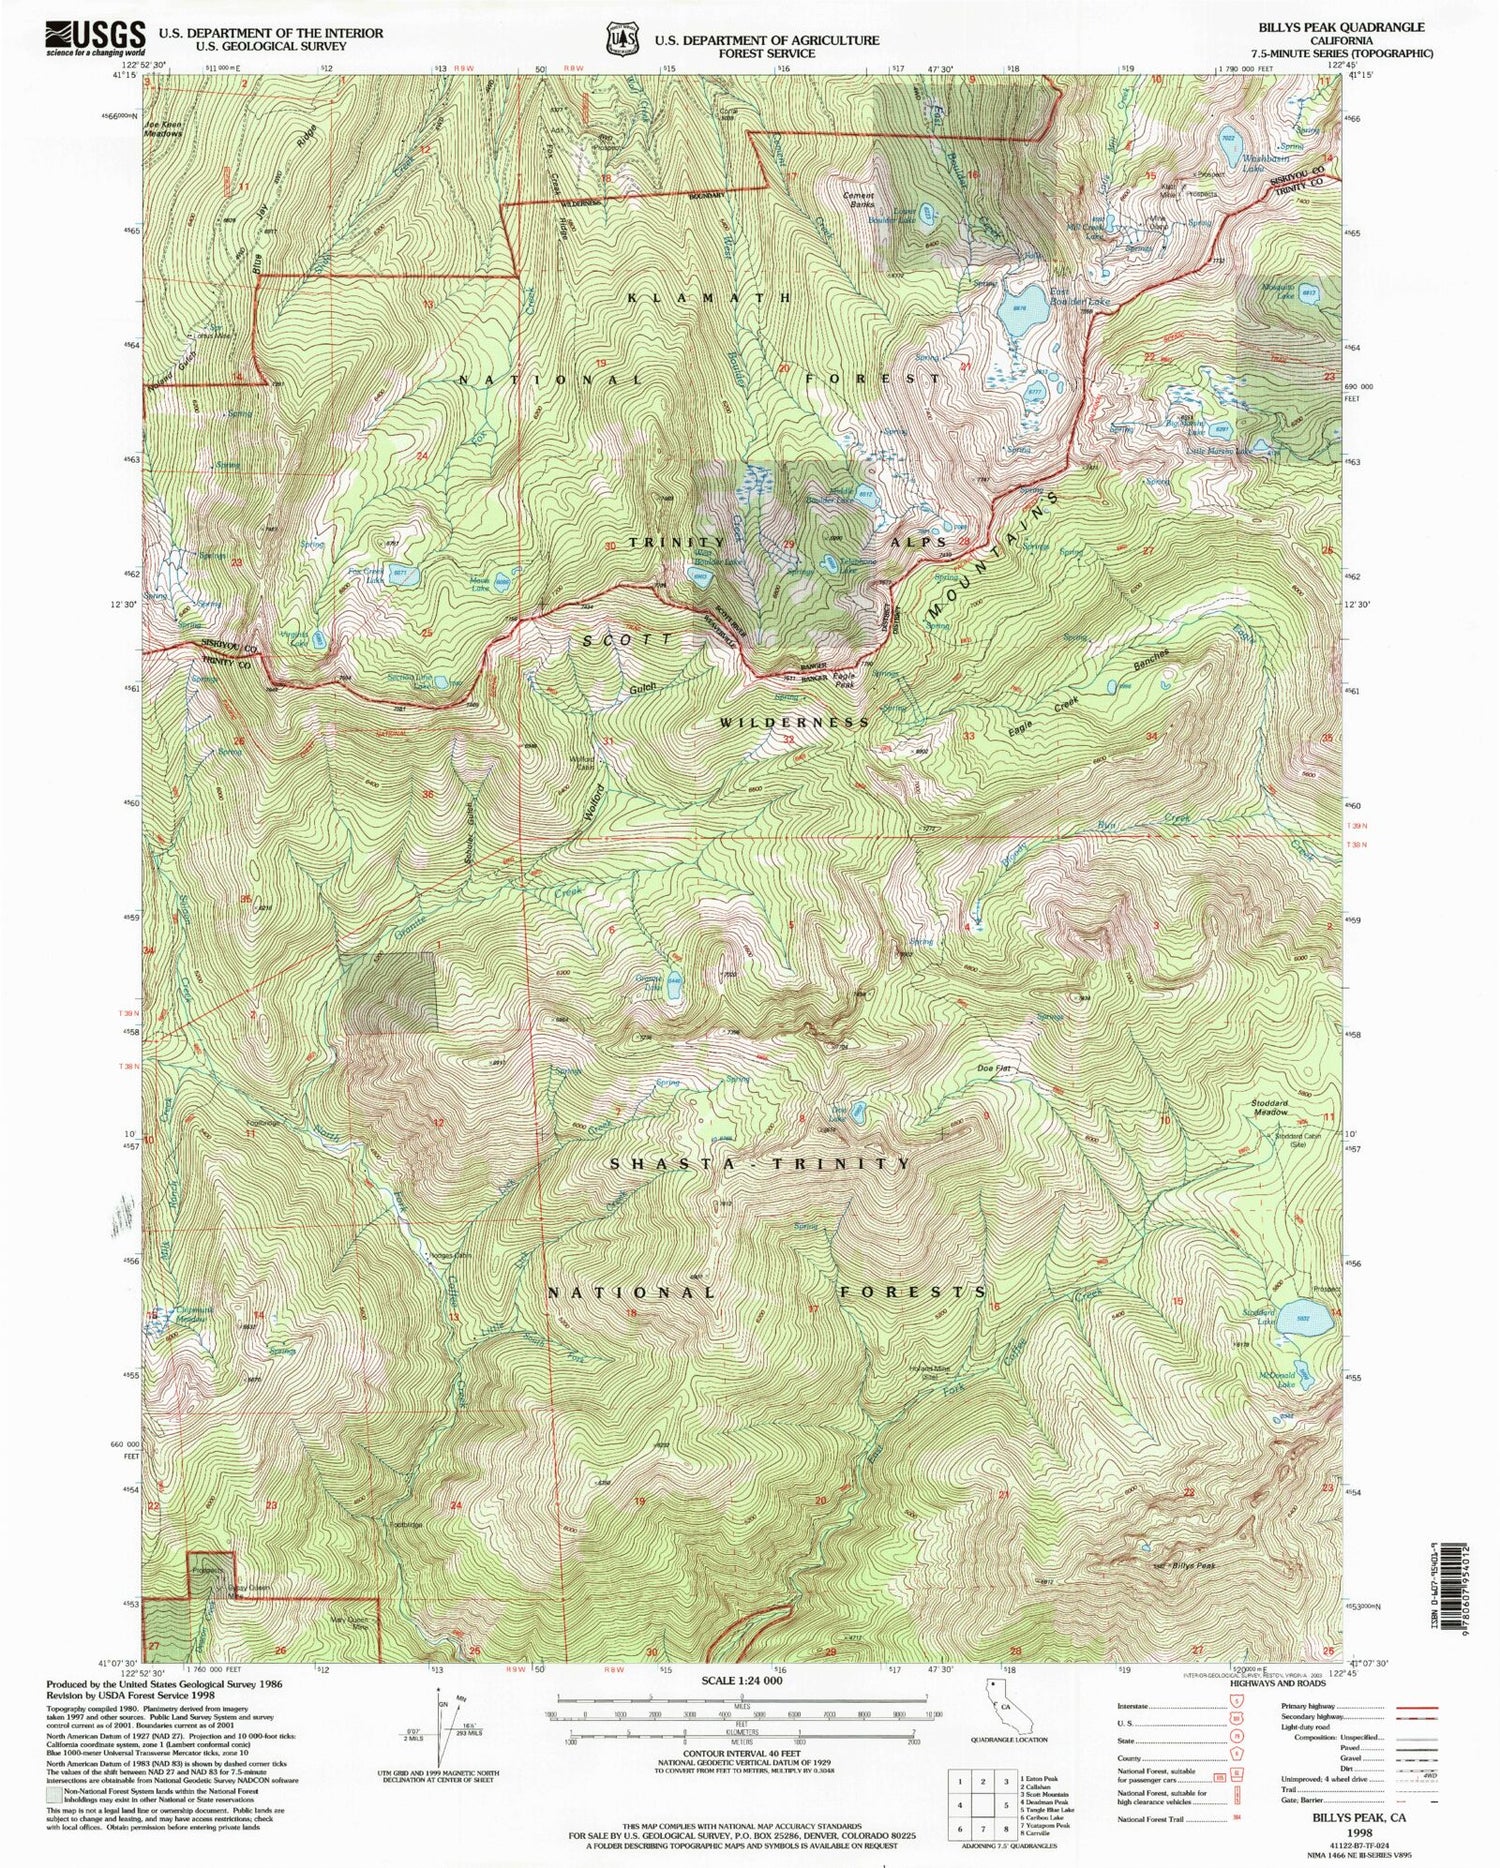 Classic USGS Billys Peak California 7.5'x7.5' Topo Map Image